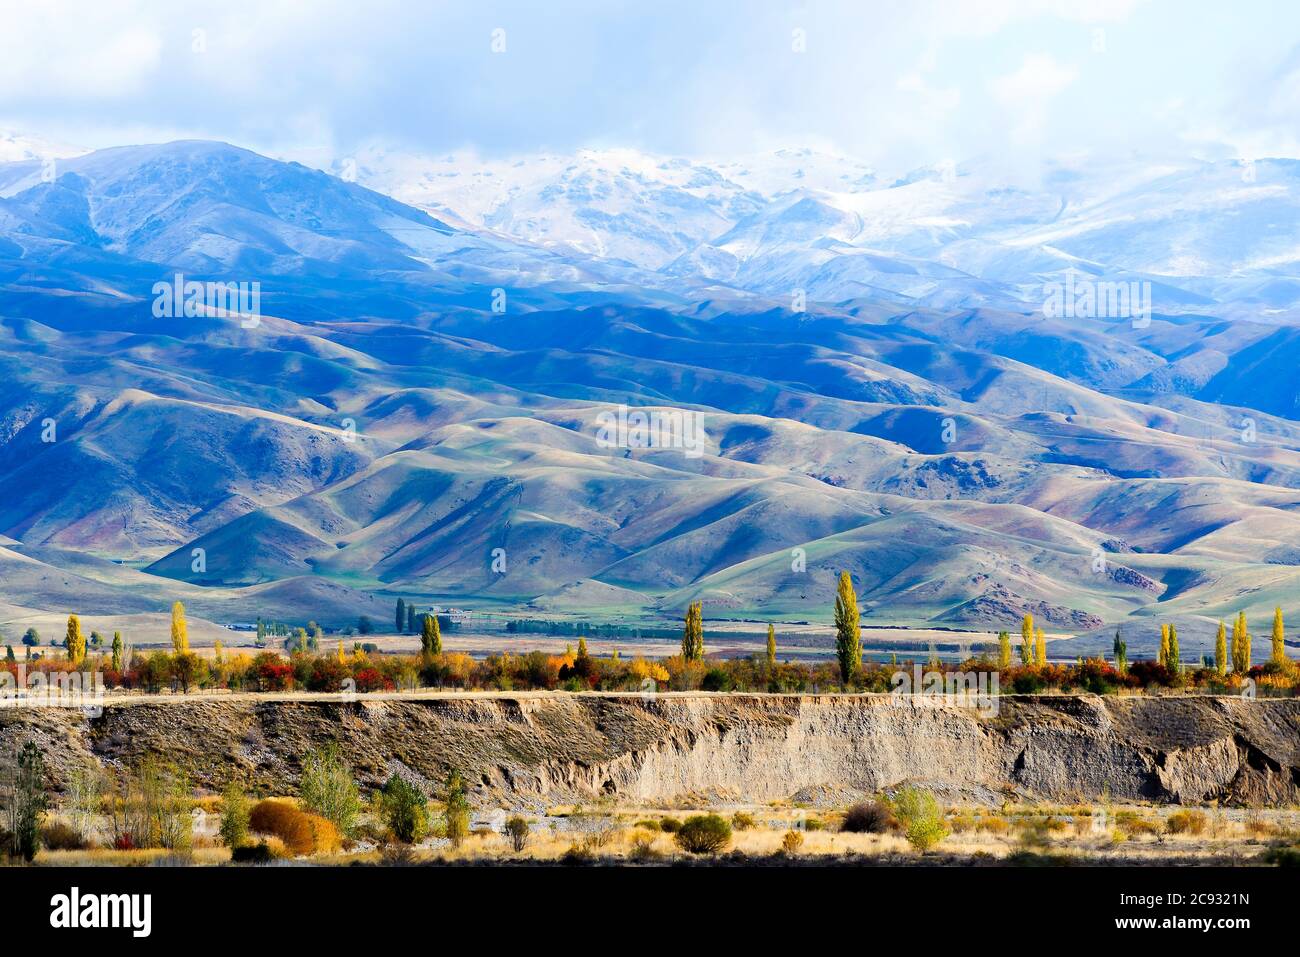 Campagna del Kirghizistan nella regione di Issyk Kul. Terreno erboso con montagne innevate della catena montuosa di Tian Shan parzialmente visto dietro le nuvole. Foto Stock